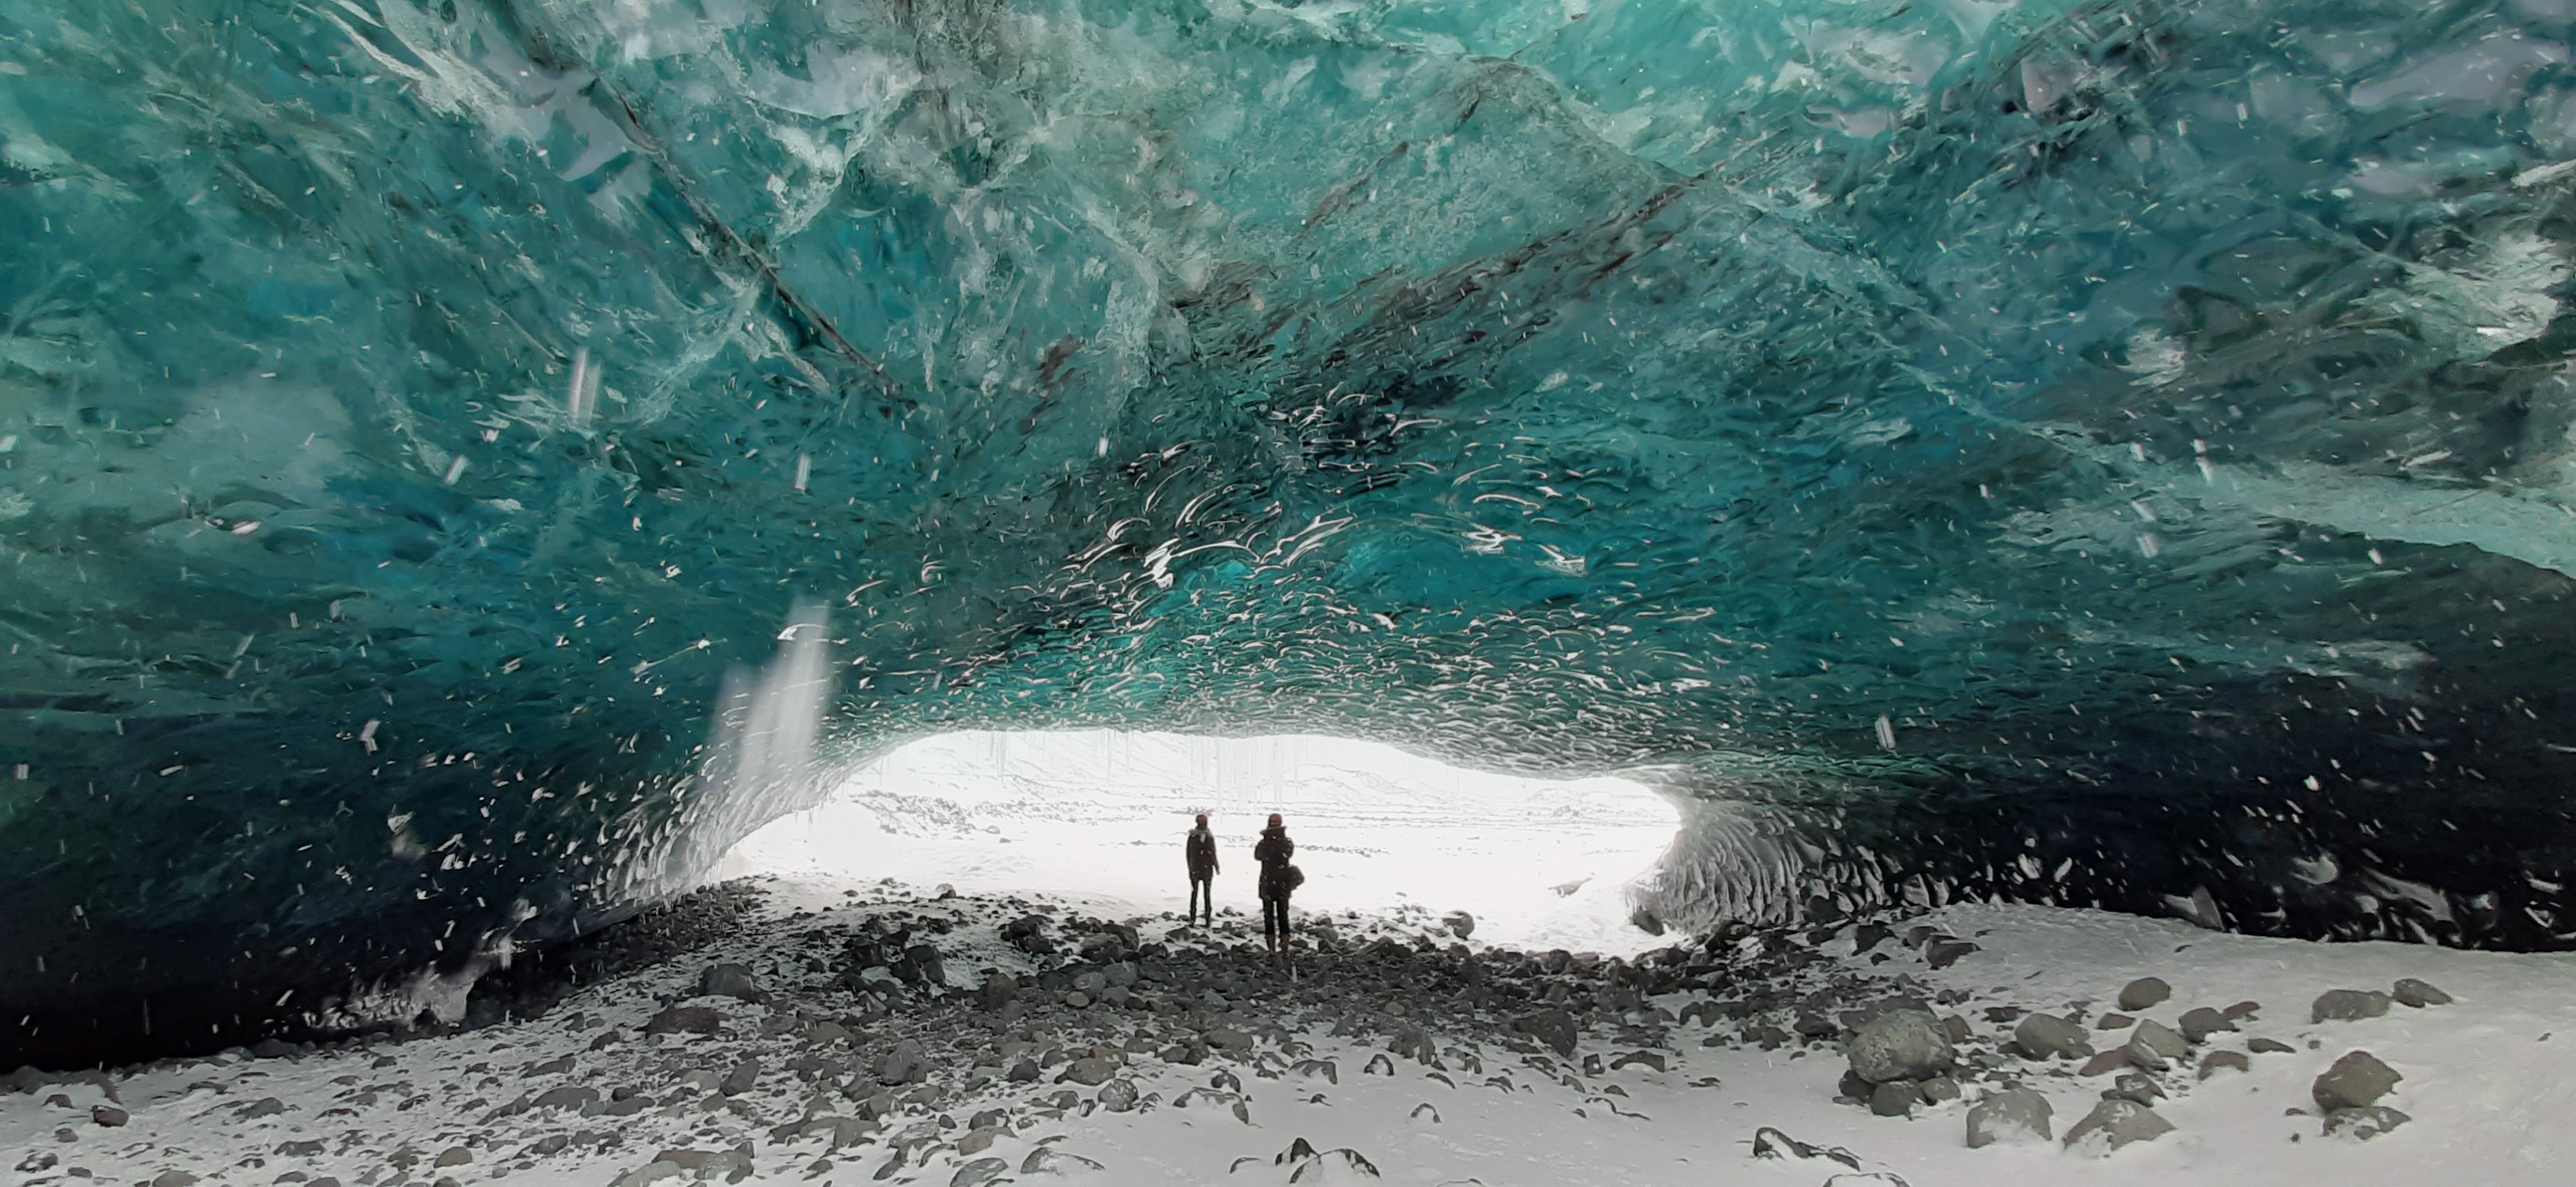 Sapphire Blue Ice Cave, Breiðamerkurjökull, Vatnajökull